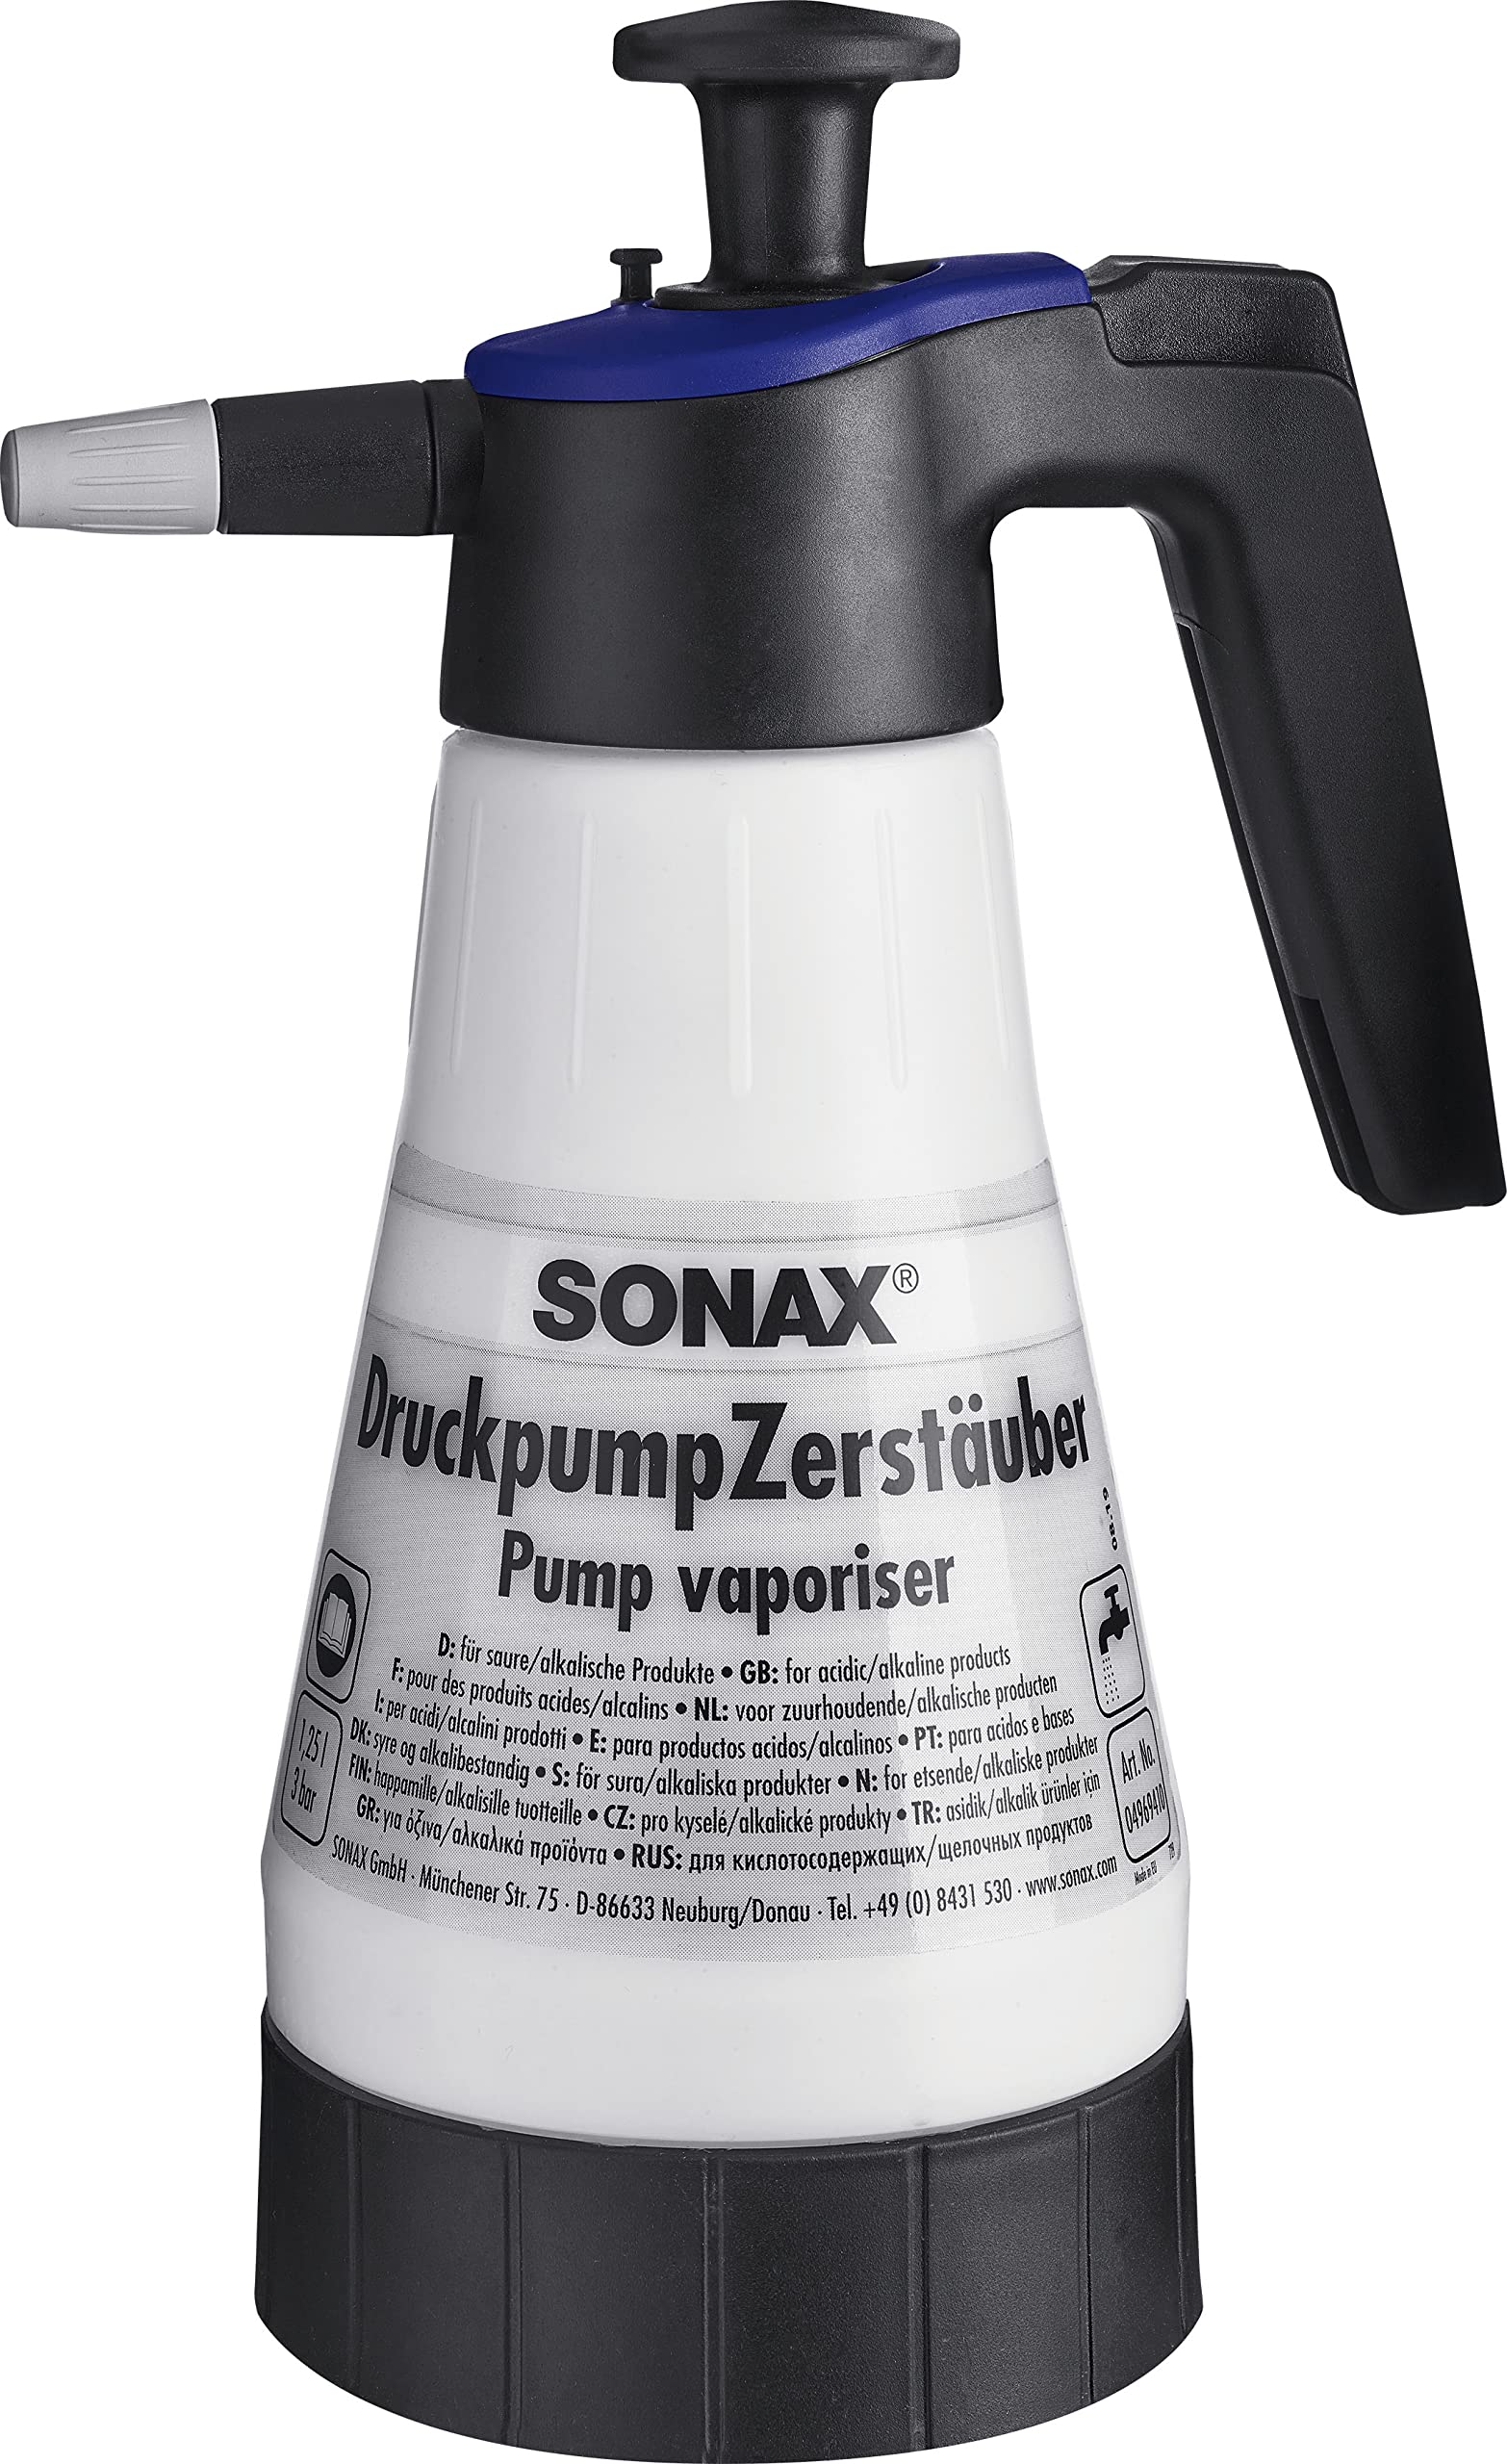 SONAX DruckpumpZerstäuber für saure/alkalische Produkte (1 Stück) zum bequemen Aufbringen von säure- und alkalienhaltigen Reinigungs- und Pflegemitteln | Art-Nr. 04969410